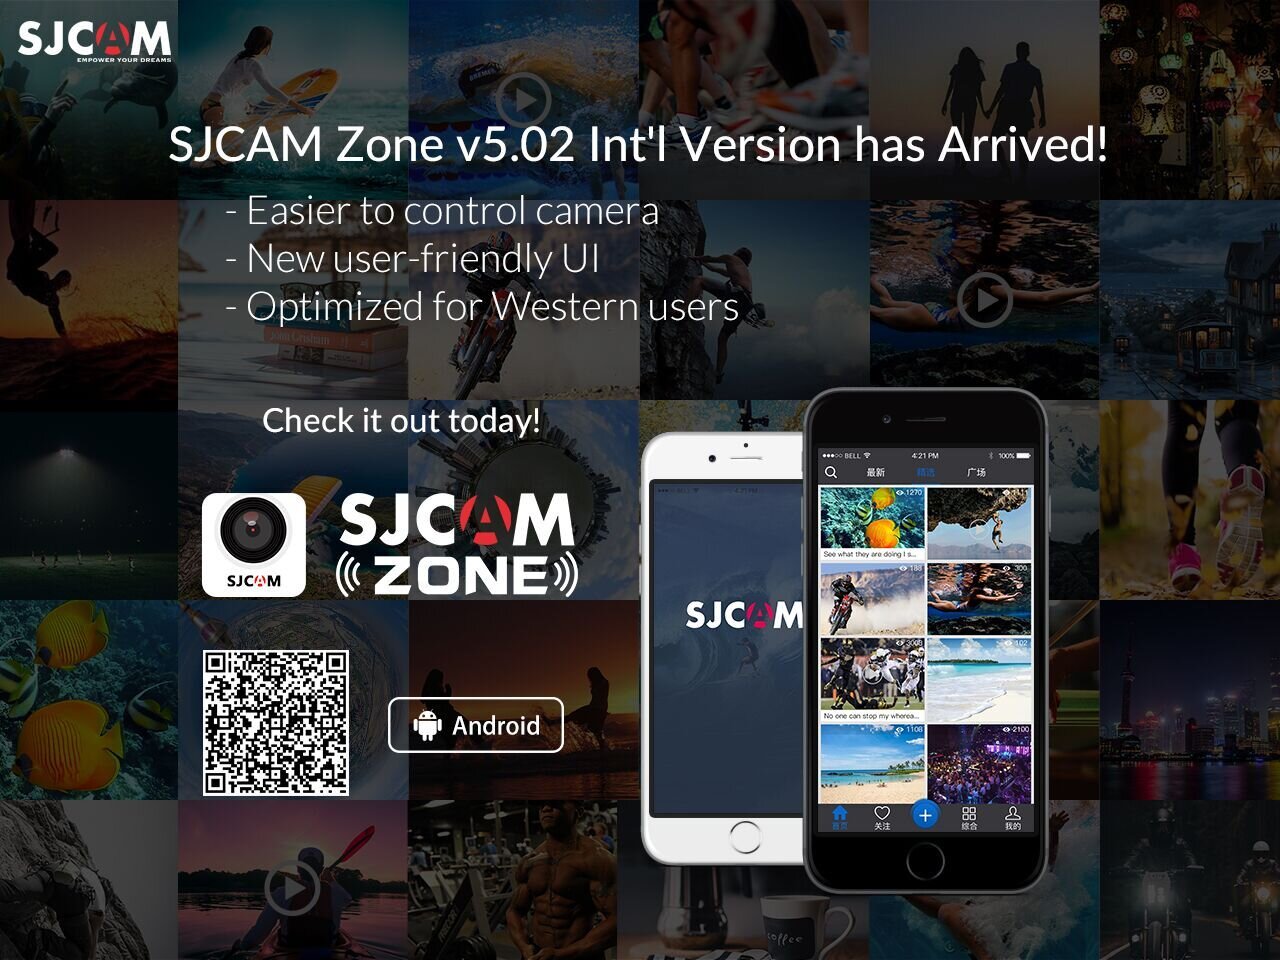 SJCAM Zone là ứng dụng của hãng SJCam sử dụng cho các thiết bị của mình